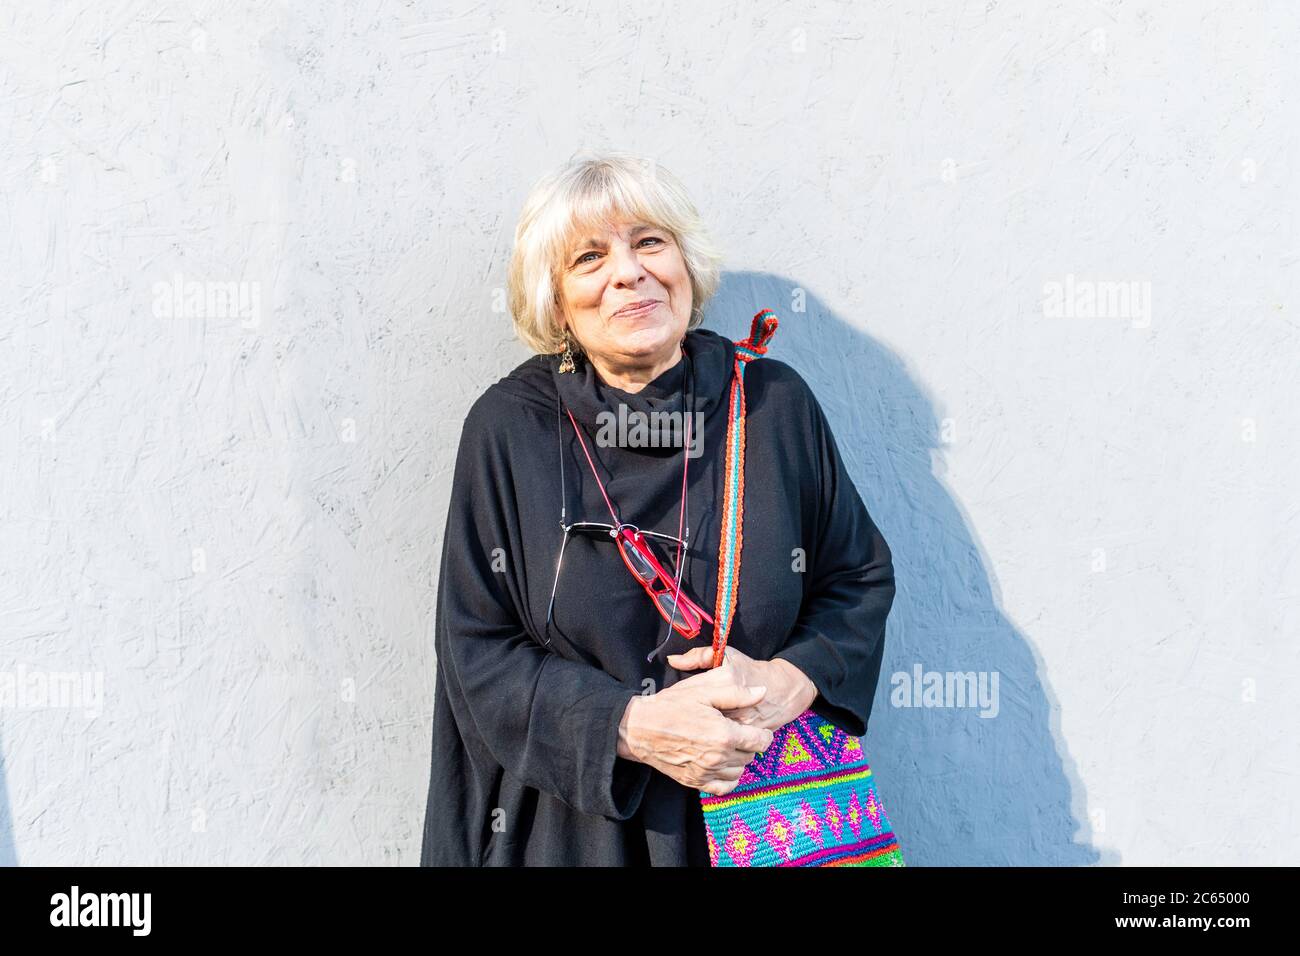 Ritratto di donna anziana con capelli biondi che indossa la parte superiore nera, in piedi davanti alla parete bianca, sorridente alla macchina fotografica. Foto Stock